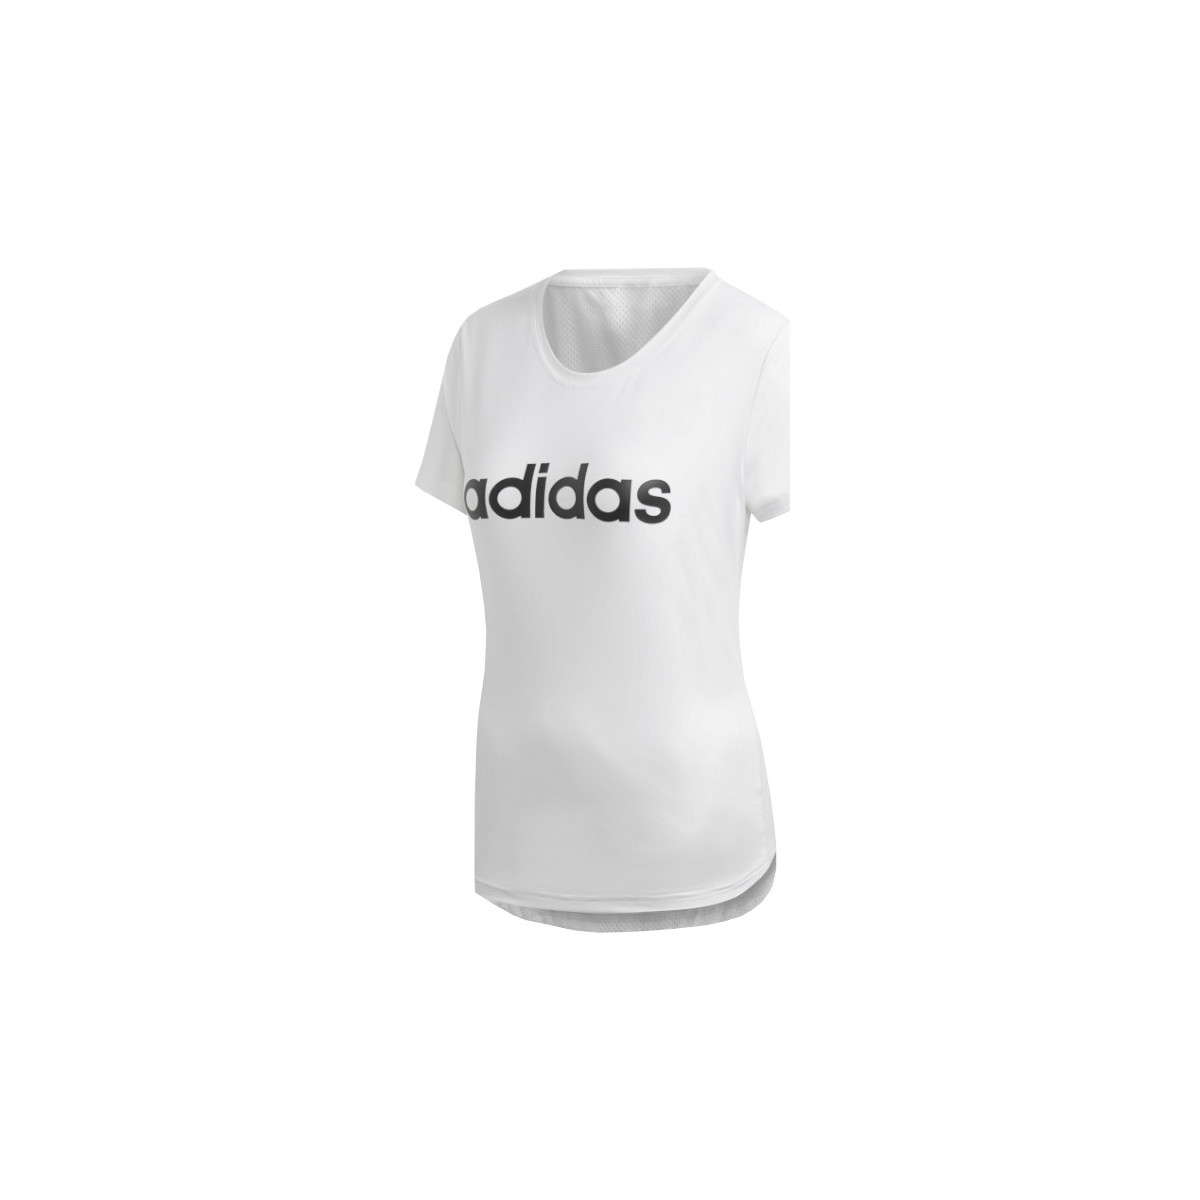 Υφασμάτινα Γυναίκα T-shirt με κοντά μανίκια adidas Originals adidas Design 2 Move Logo Tee Άσπρο